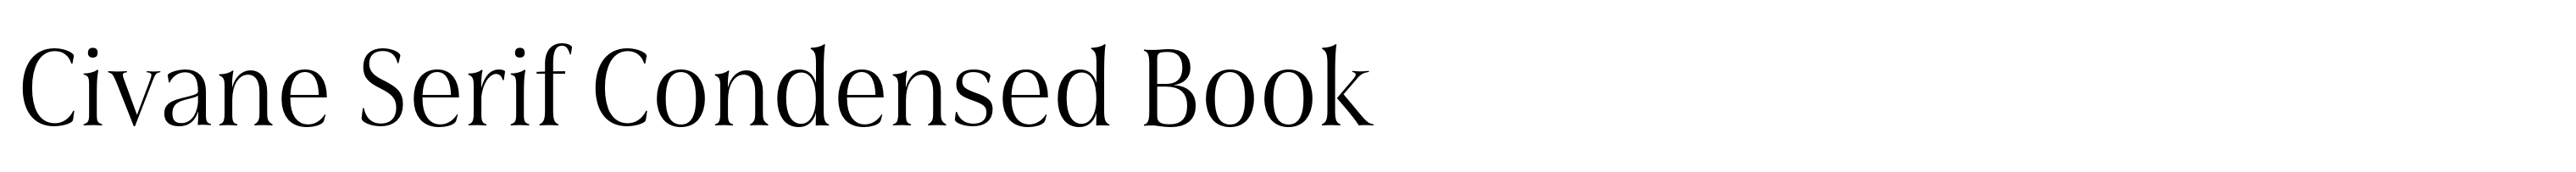 Civane Serif Condensed Book